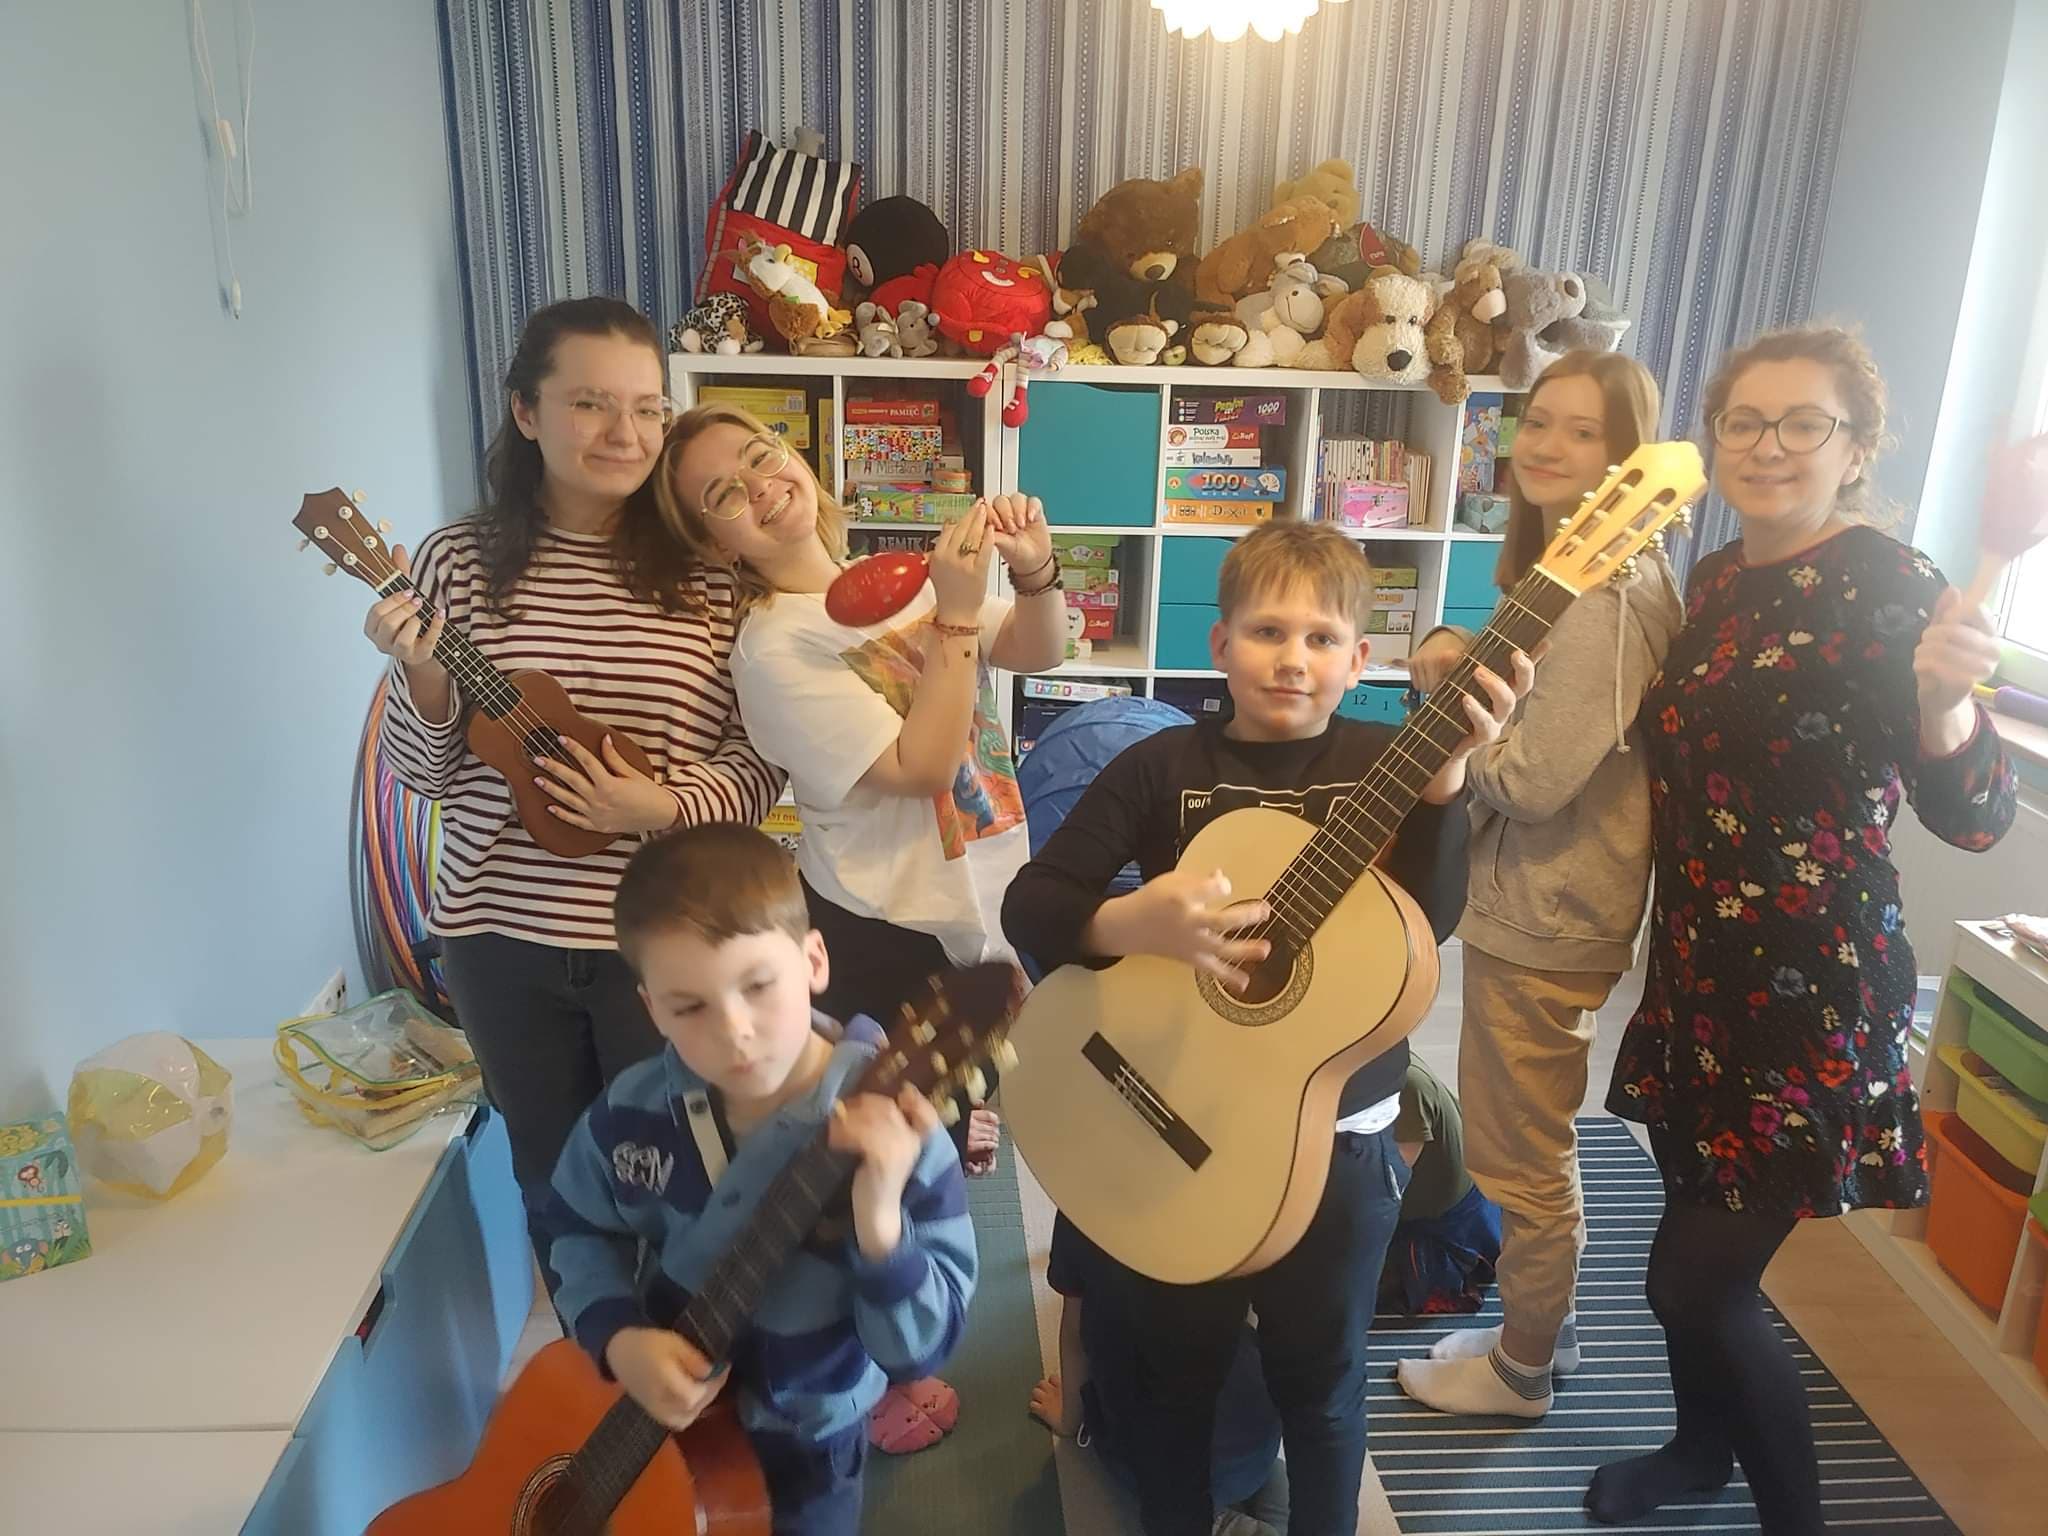 6 osób stoi w pomieszczeniu, dzieci trzymają instrumenty ( gitara, ukelele, marakas). W tle regał z zabawkami i kolorowa ściana.